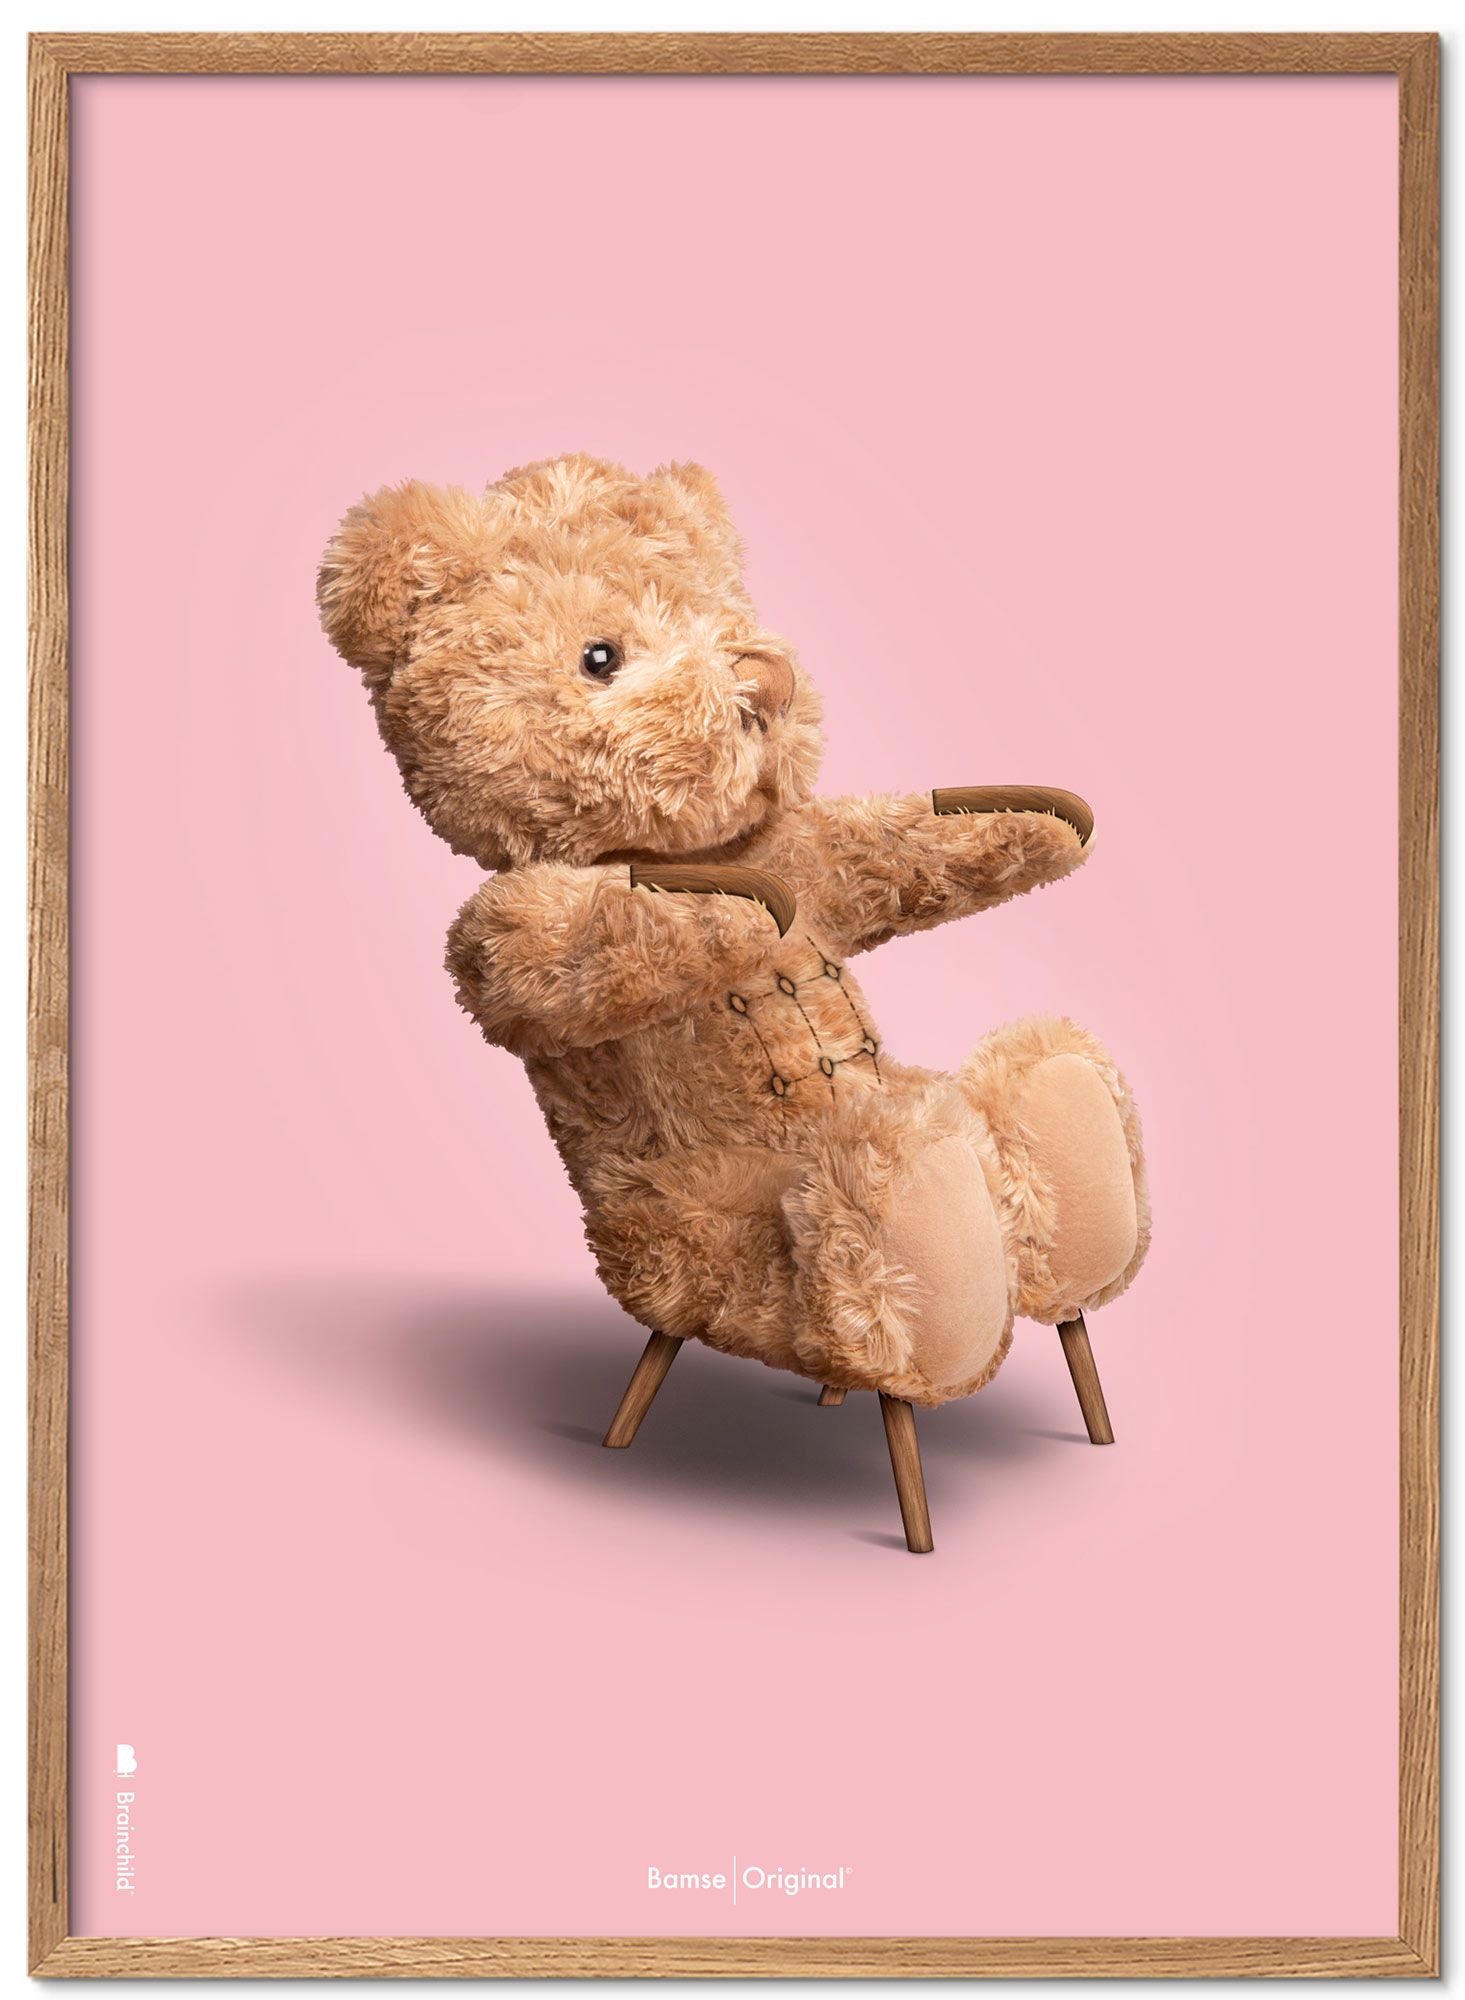 Marco de póster clásico de BrainChild Teddy Bear Hecho de madera clara Ramme 50x70 cm, fondo rosa